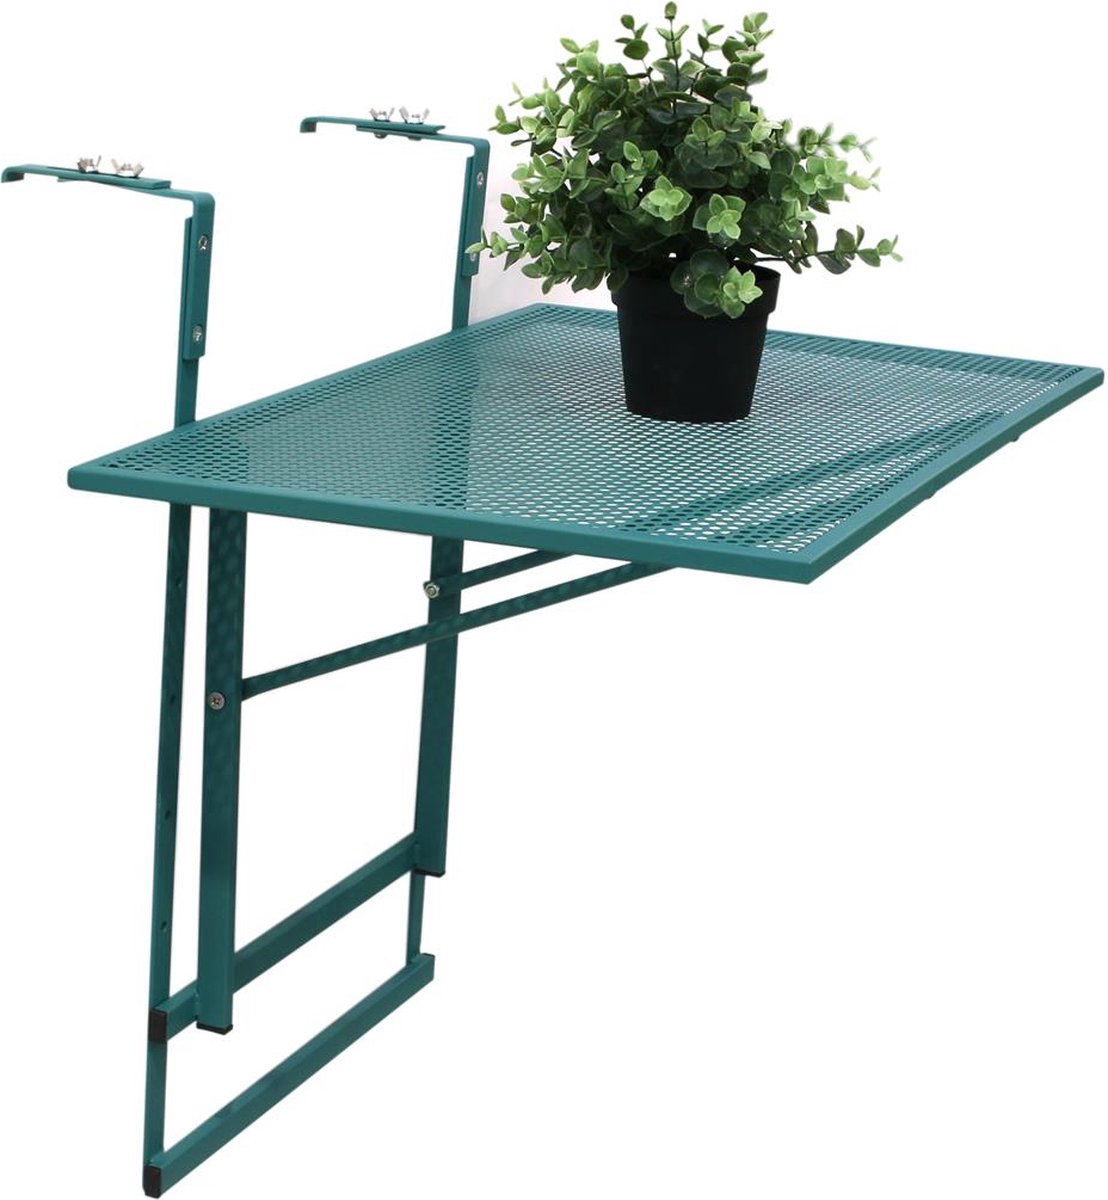 Opklapbare metalen balkon tafel - Eenvoudig te bevestigen - Ontbijt op het balkon - 60,5 x 50 x 40,5 cm - Groen